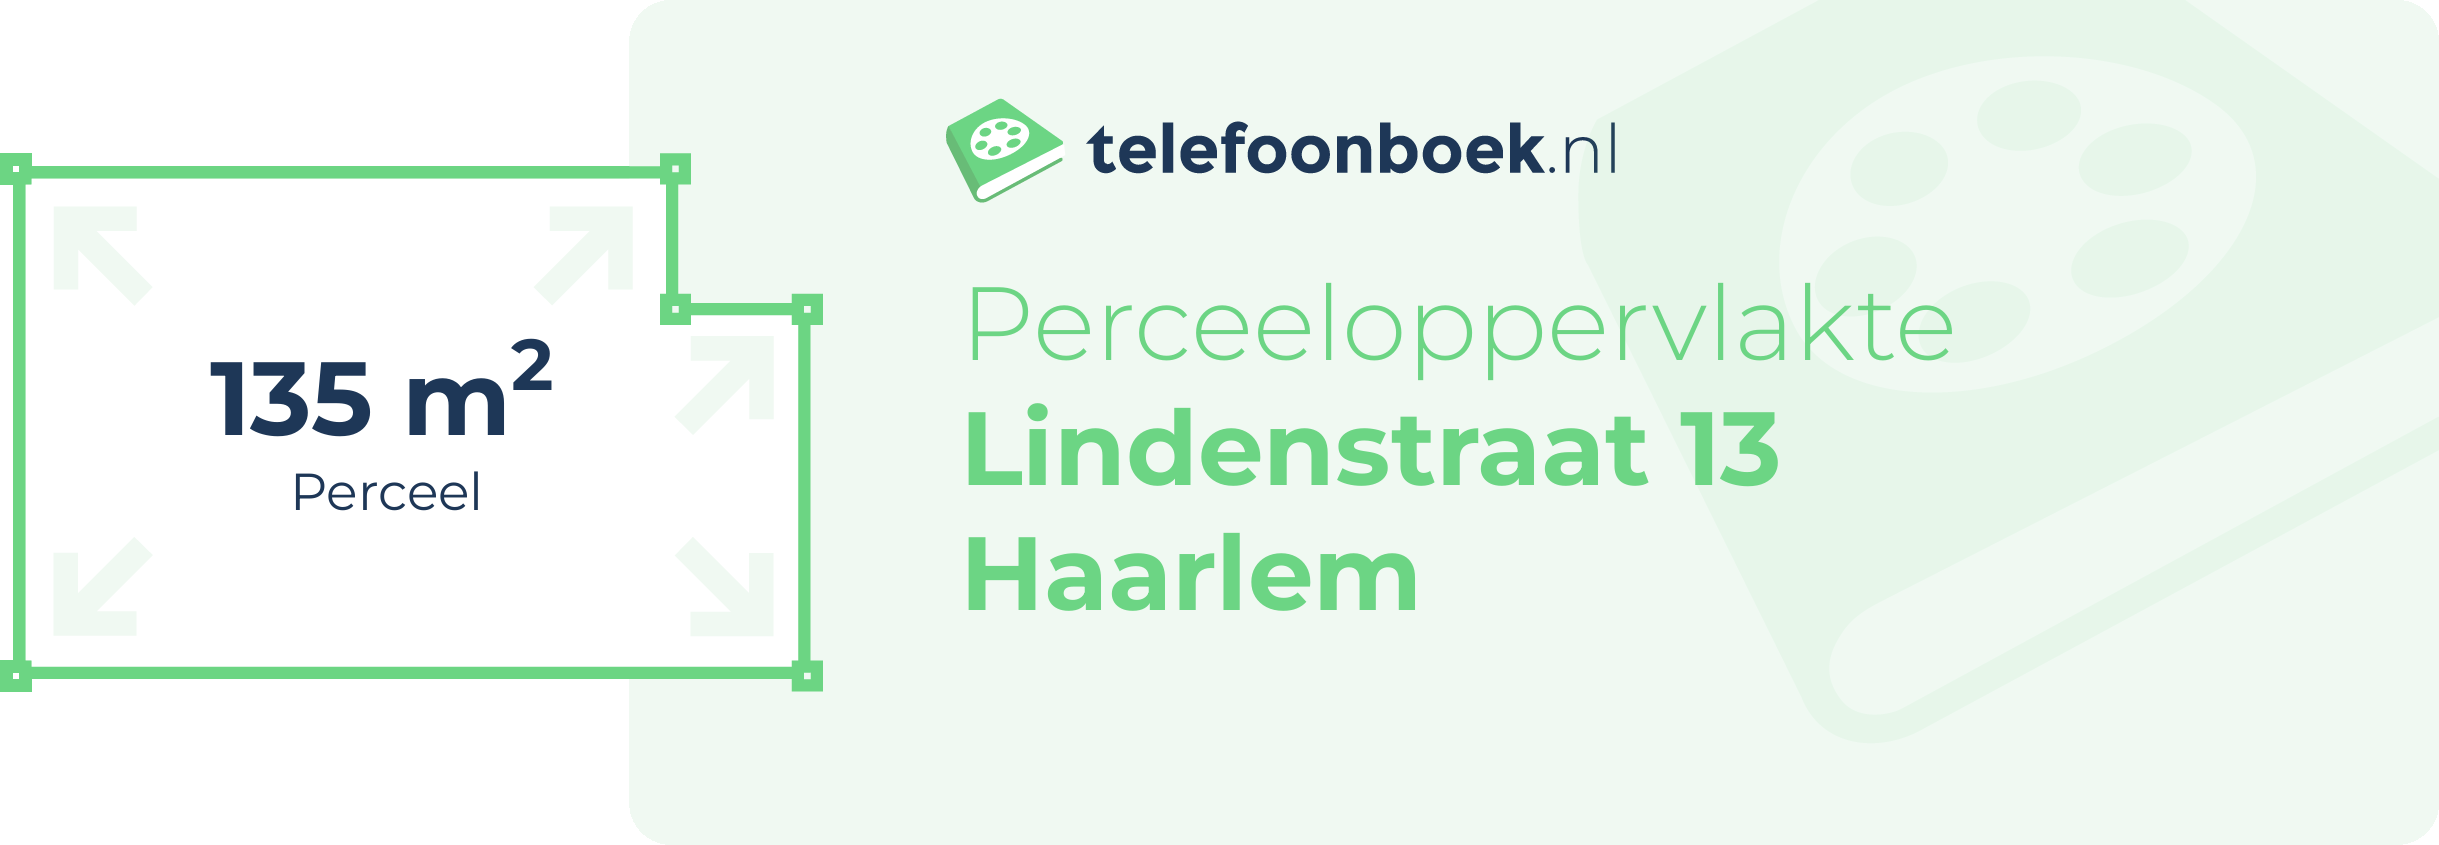 Perceeloppervlakte Lindenstraat 13 Haarlem